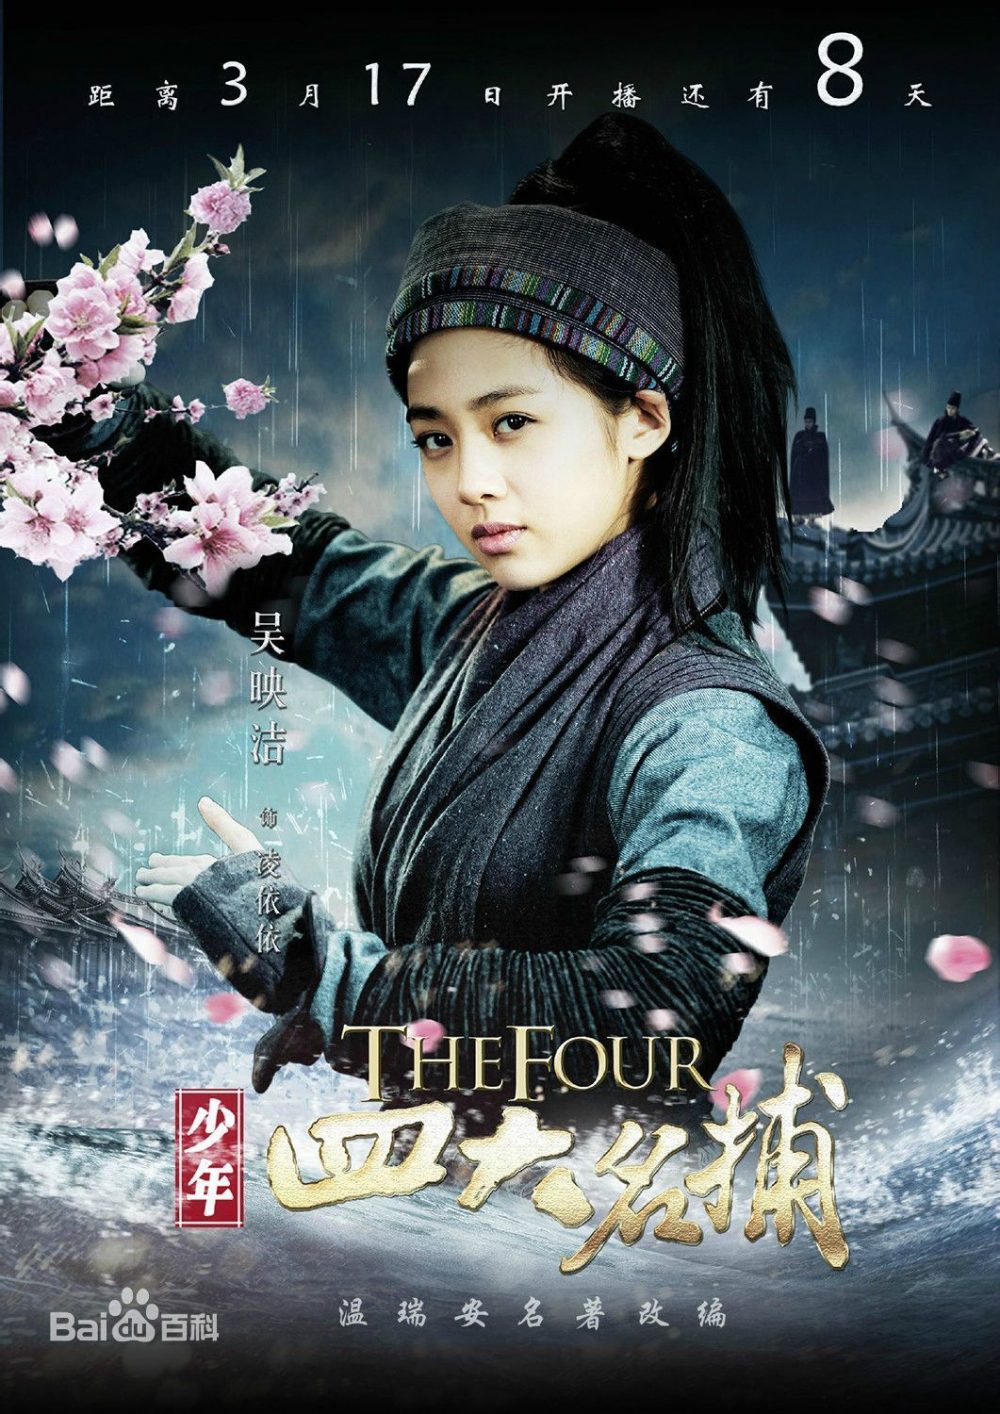 Trương Quân Ninh phim: Thiếu niên tứ đại danh bổ - The Four (2015)